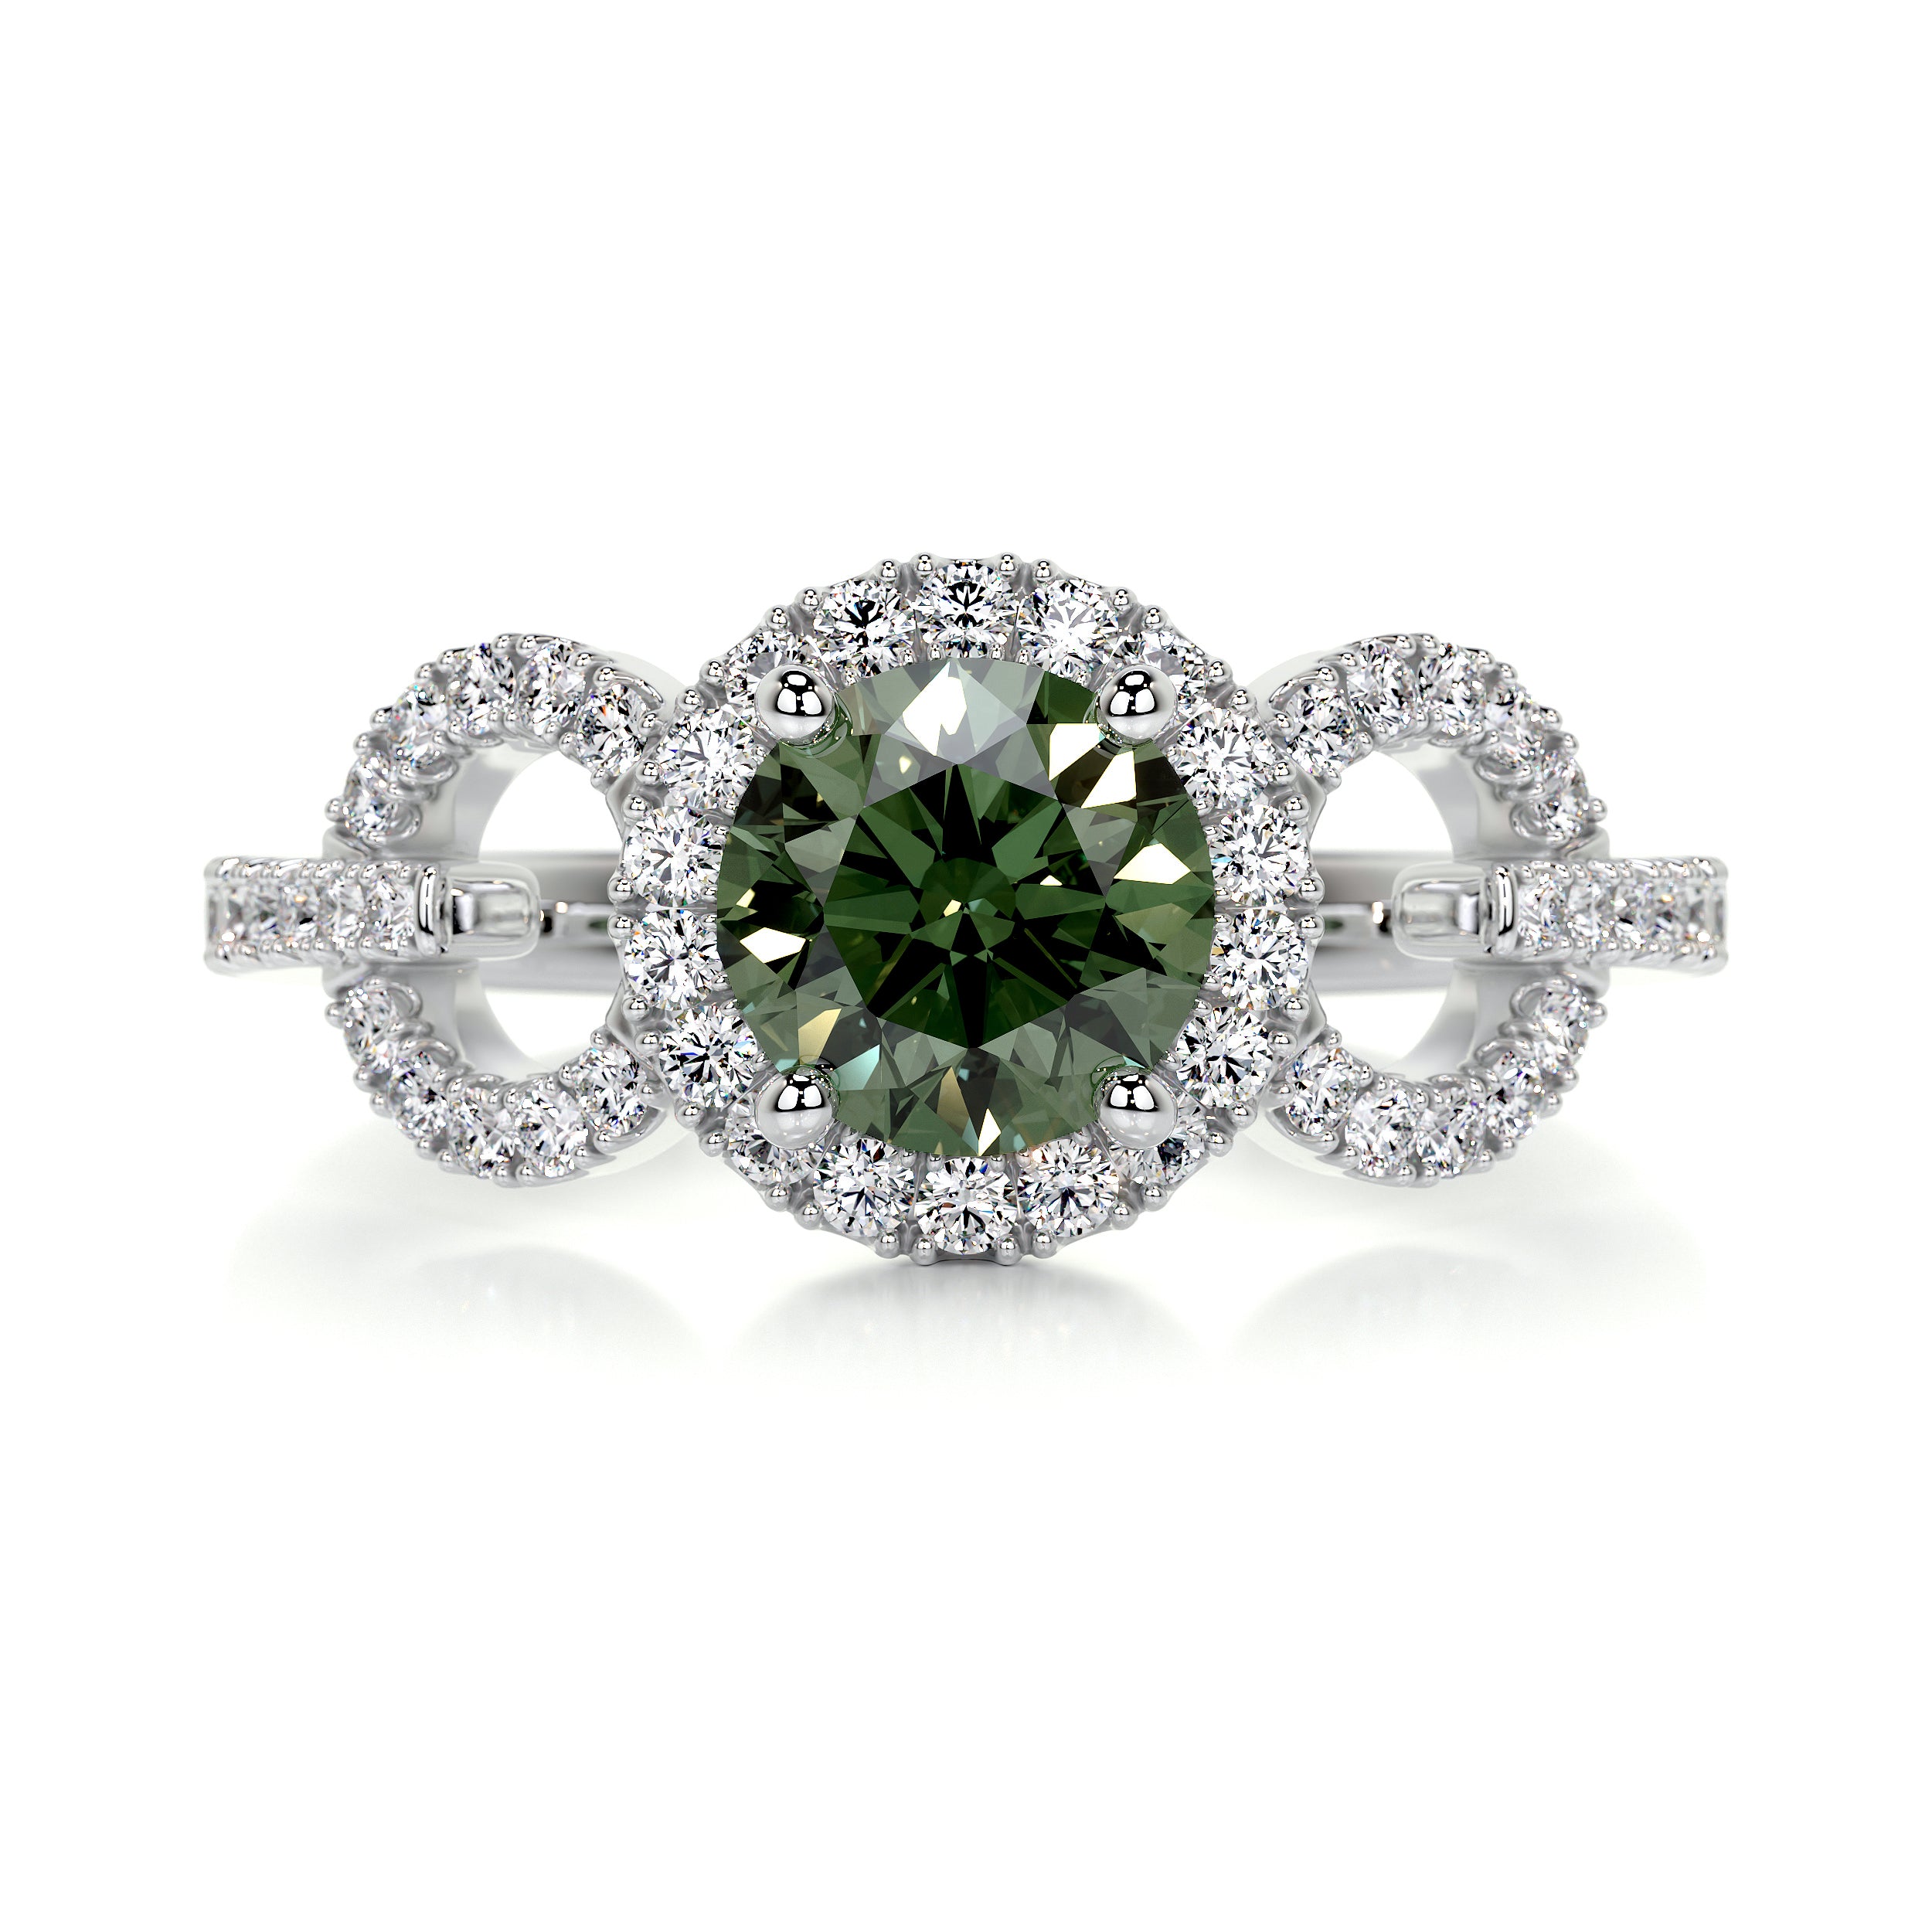 Elize Gemstone & Diamonds Ring   (1.25 Carat) -Platinum